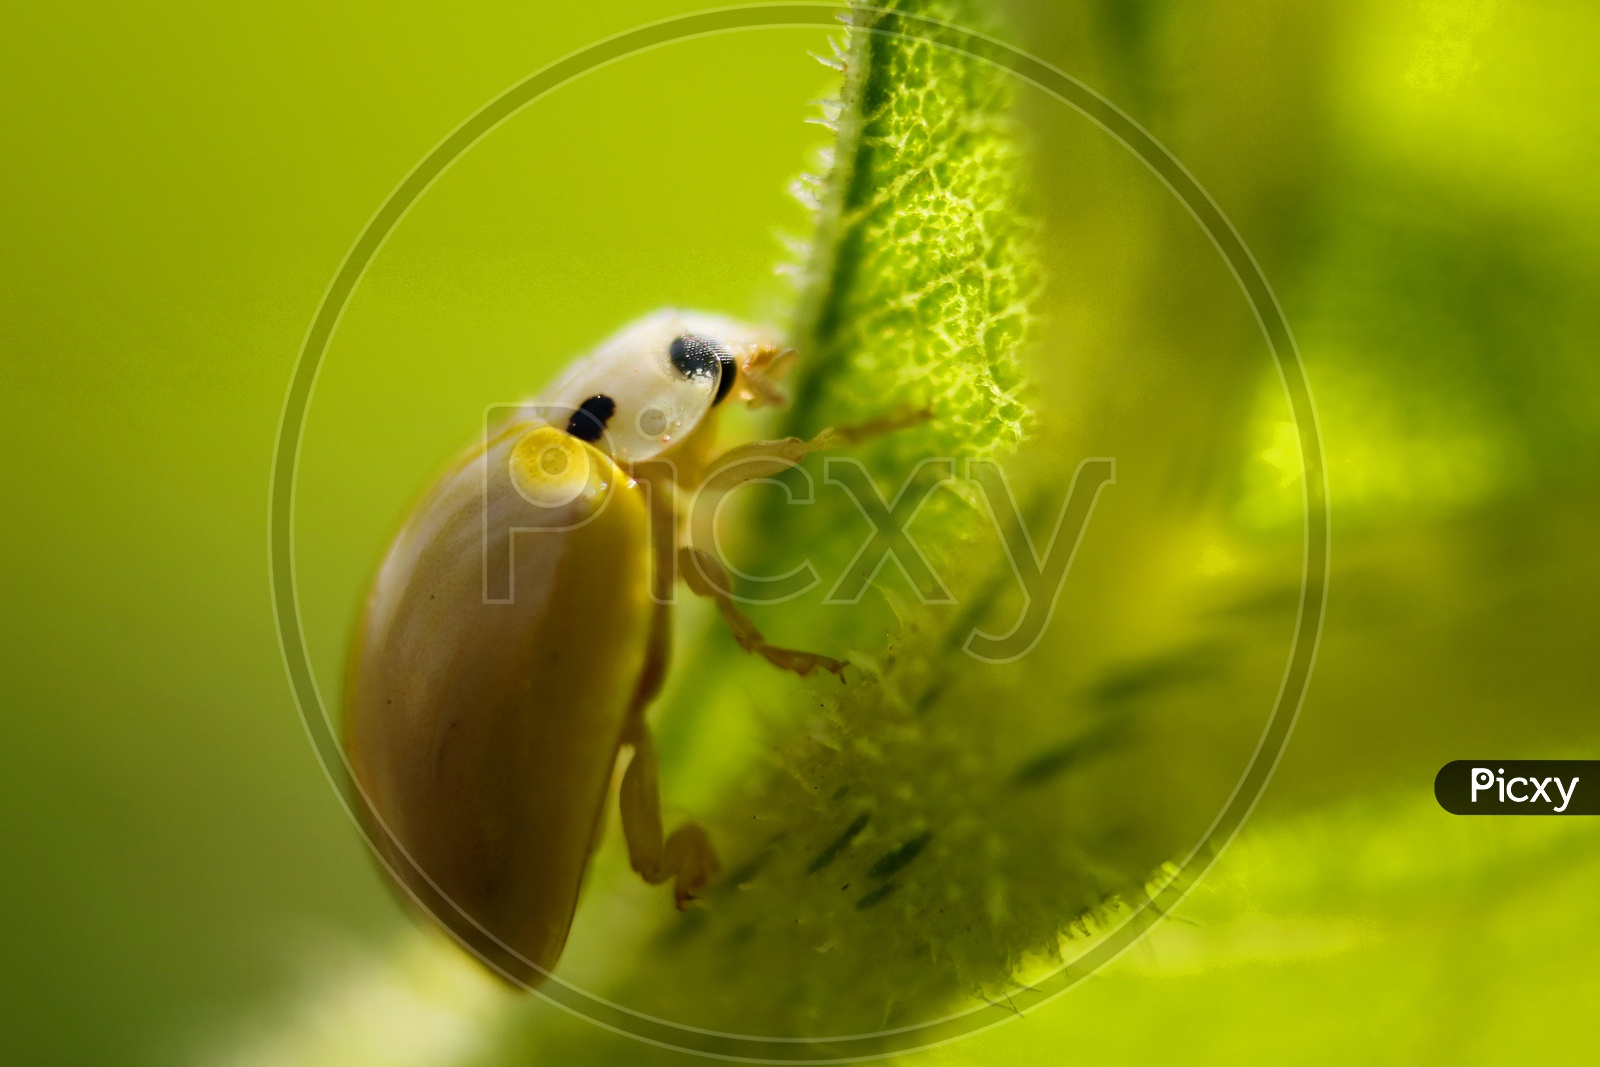 yellow spotless ladybird beetle